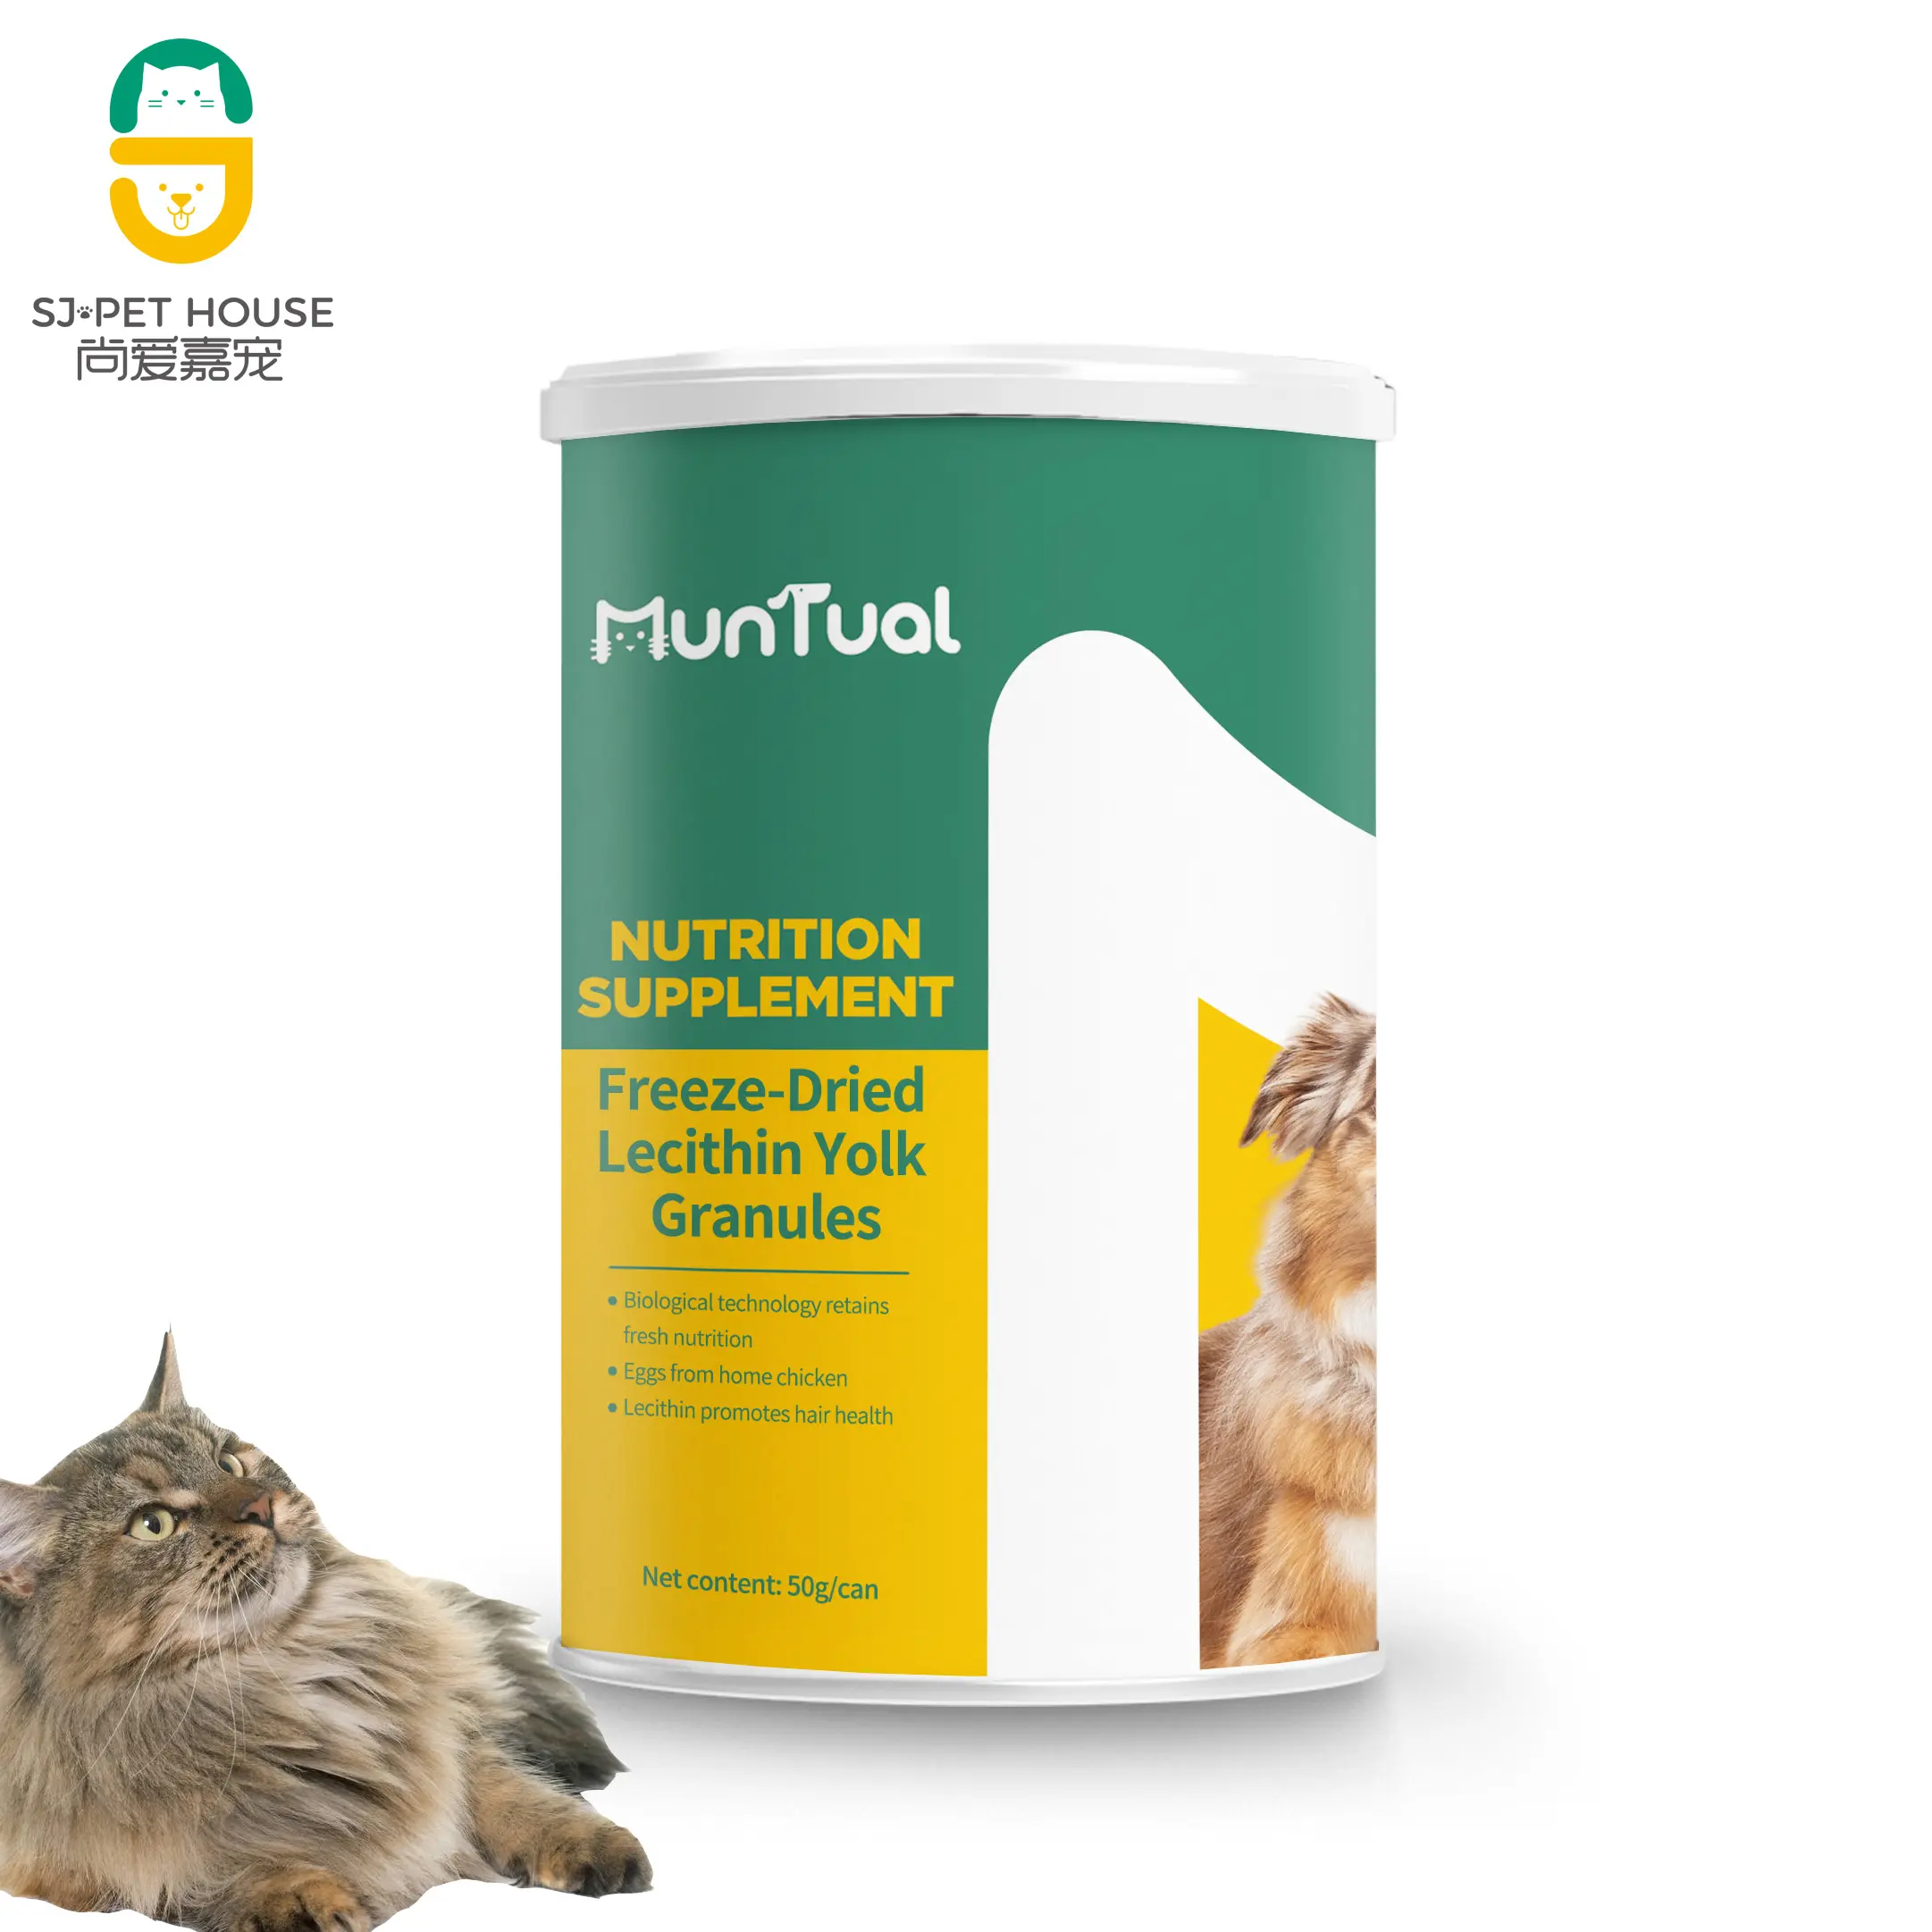 Amazon kedi köpek pet süt ortak saç probiyotikler sağlık bakımı çok vitamin dondurularak kurutulmuş beslenme takviyesi evcil hayvan gıda